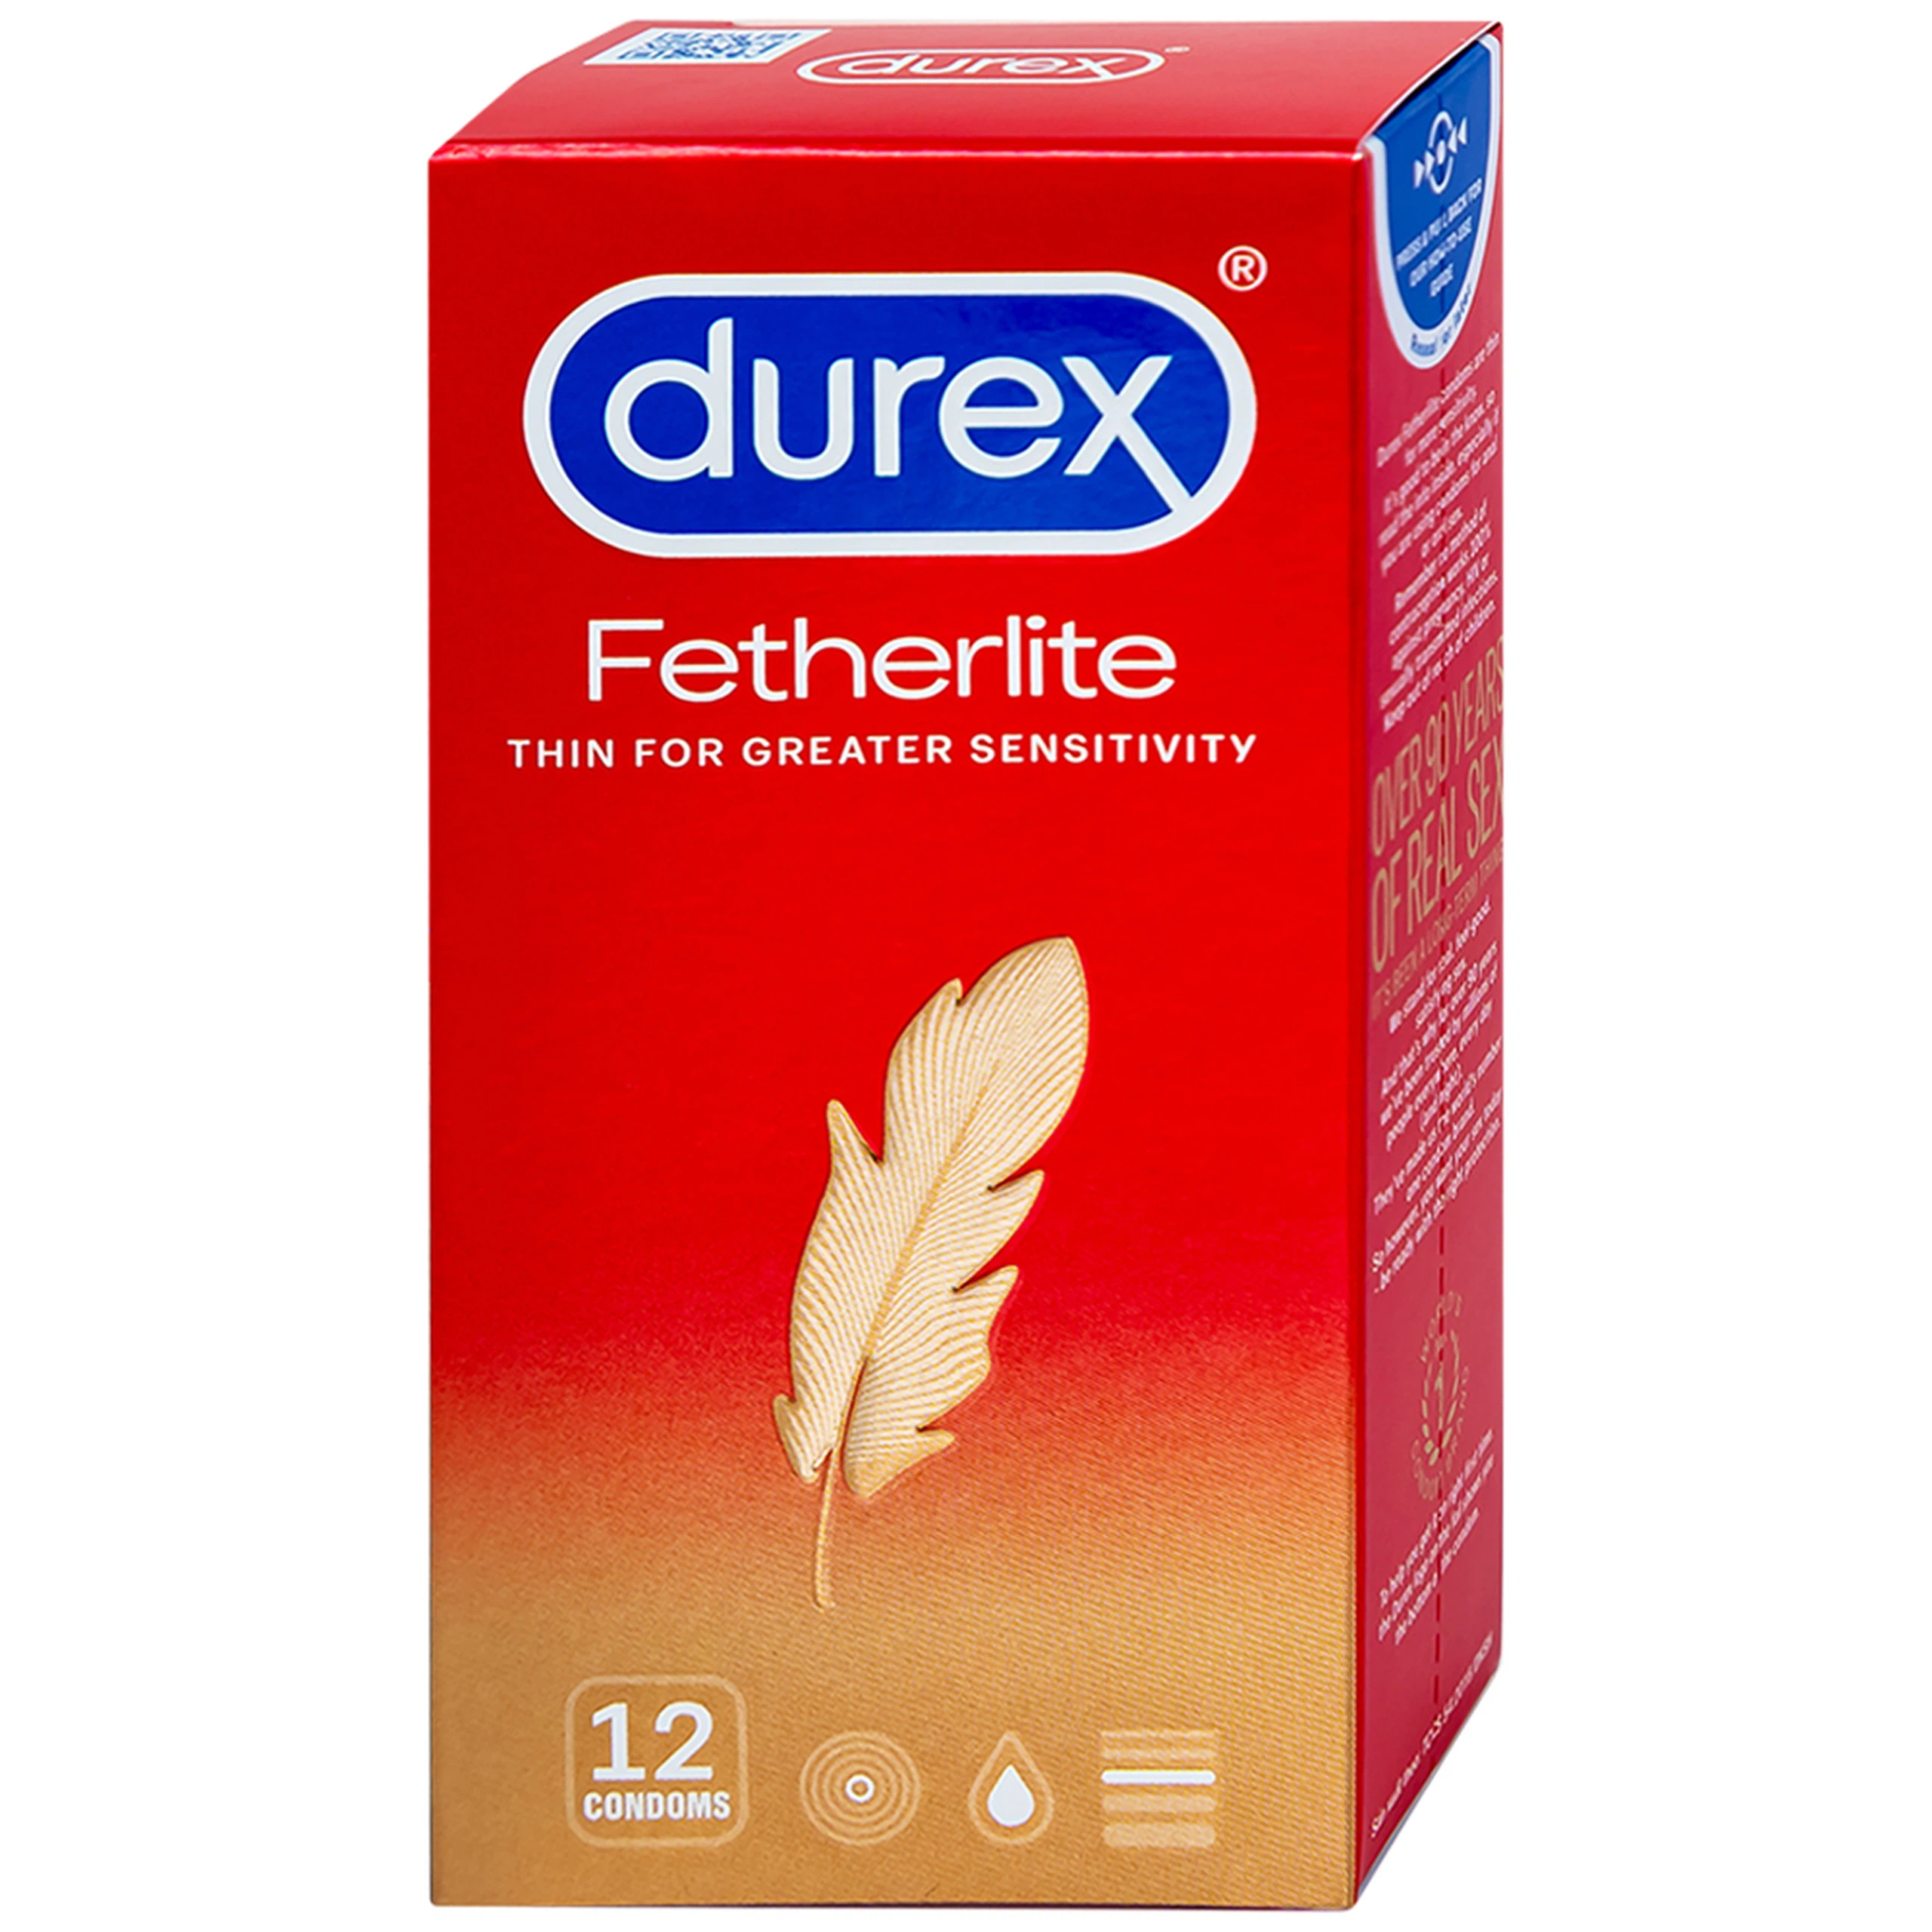 Bao cao su Durex Fetherlite vừa vặn, độ bảo vệ cao (12 cái)